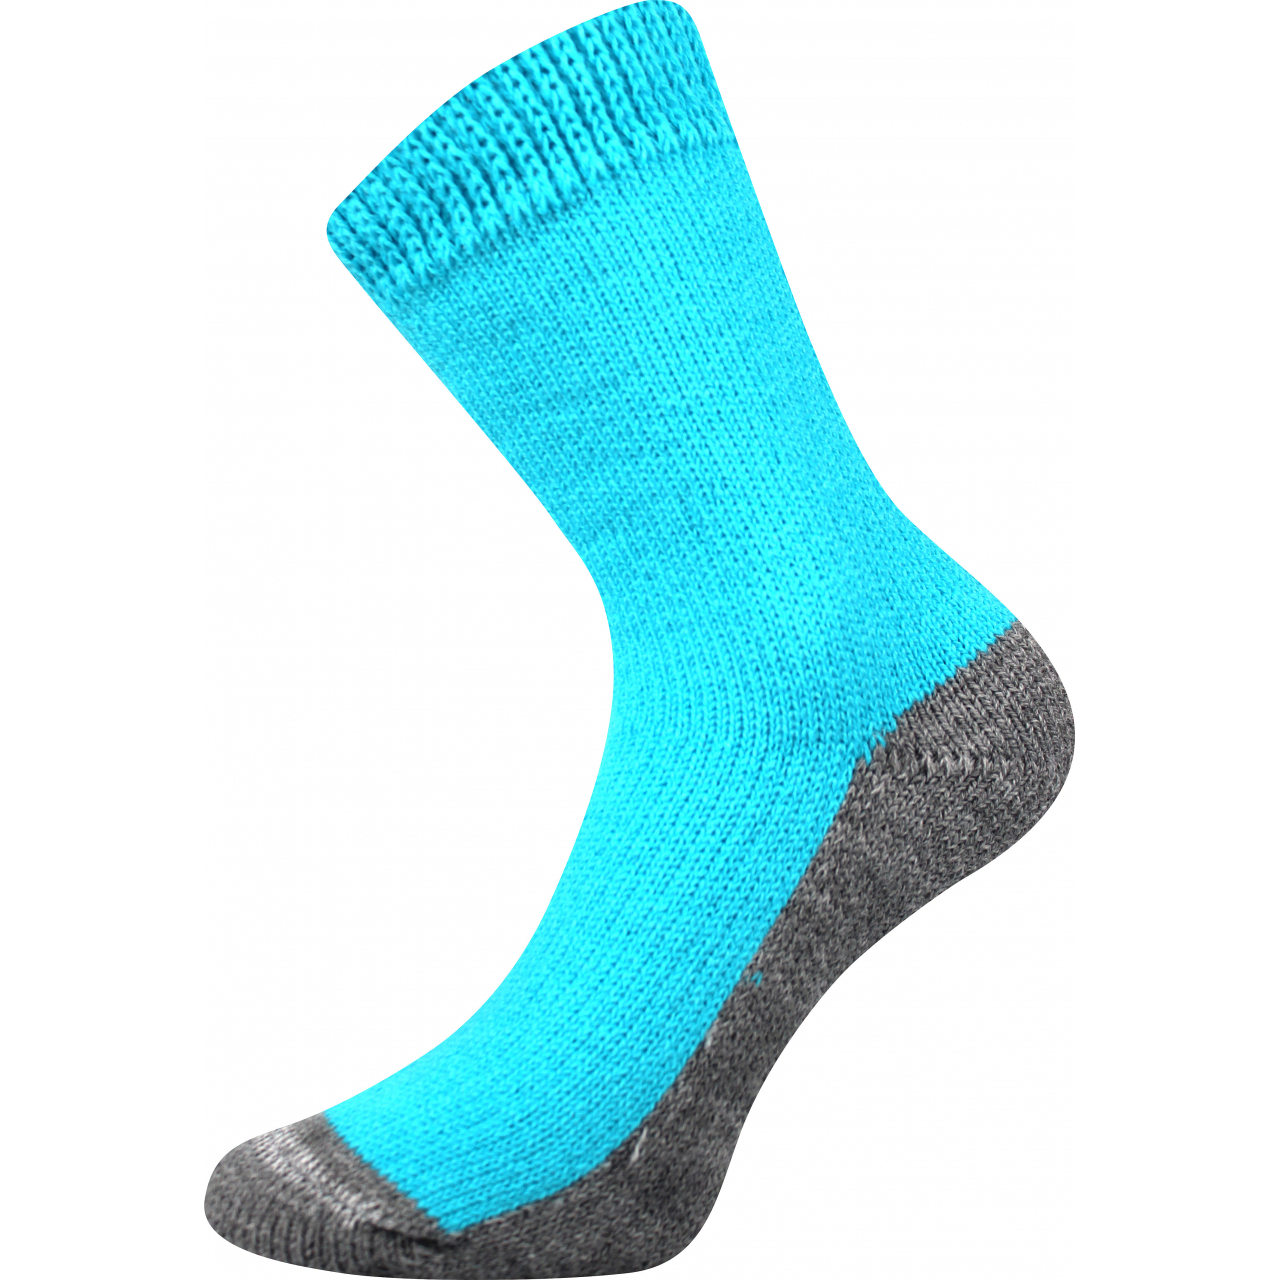 Ponožky unisex Boma Spací - tyrkysové, 43-46